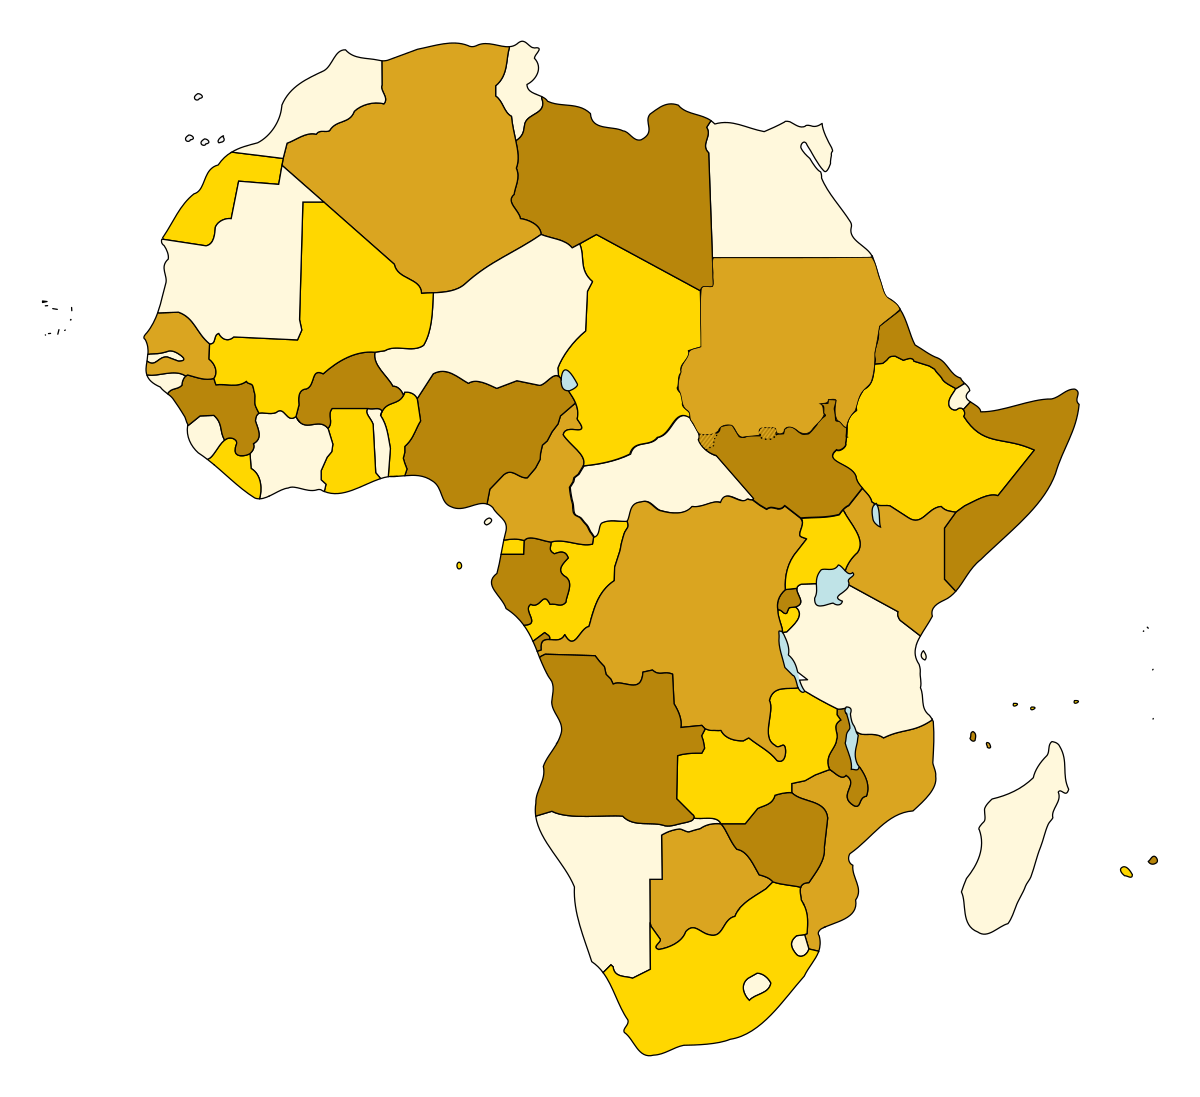 African countries. Силуэты стран Африки. Контур Африки с государствами. Контуры стран Африки. Карта Африки.